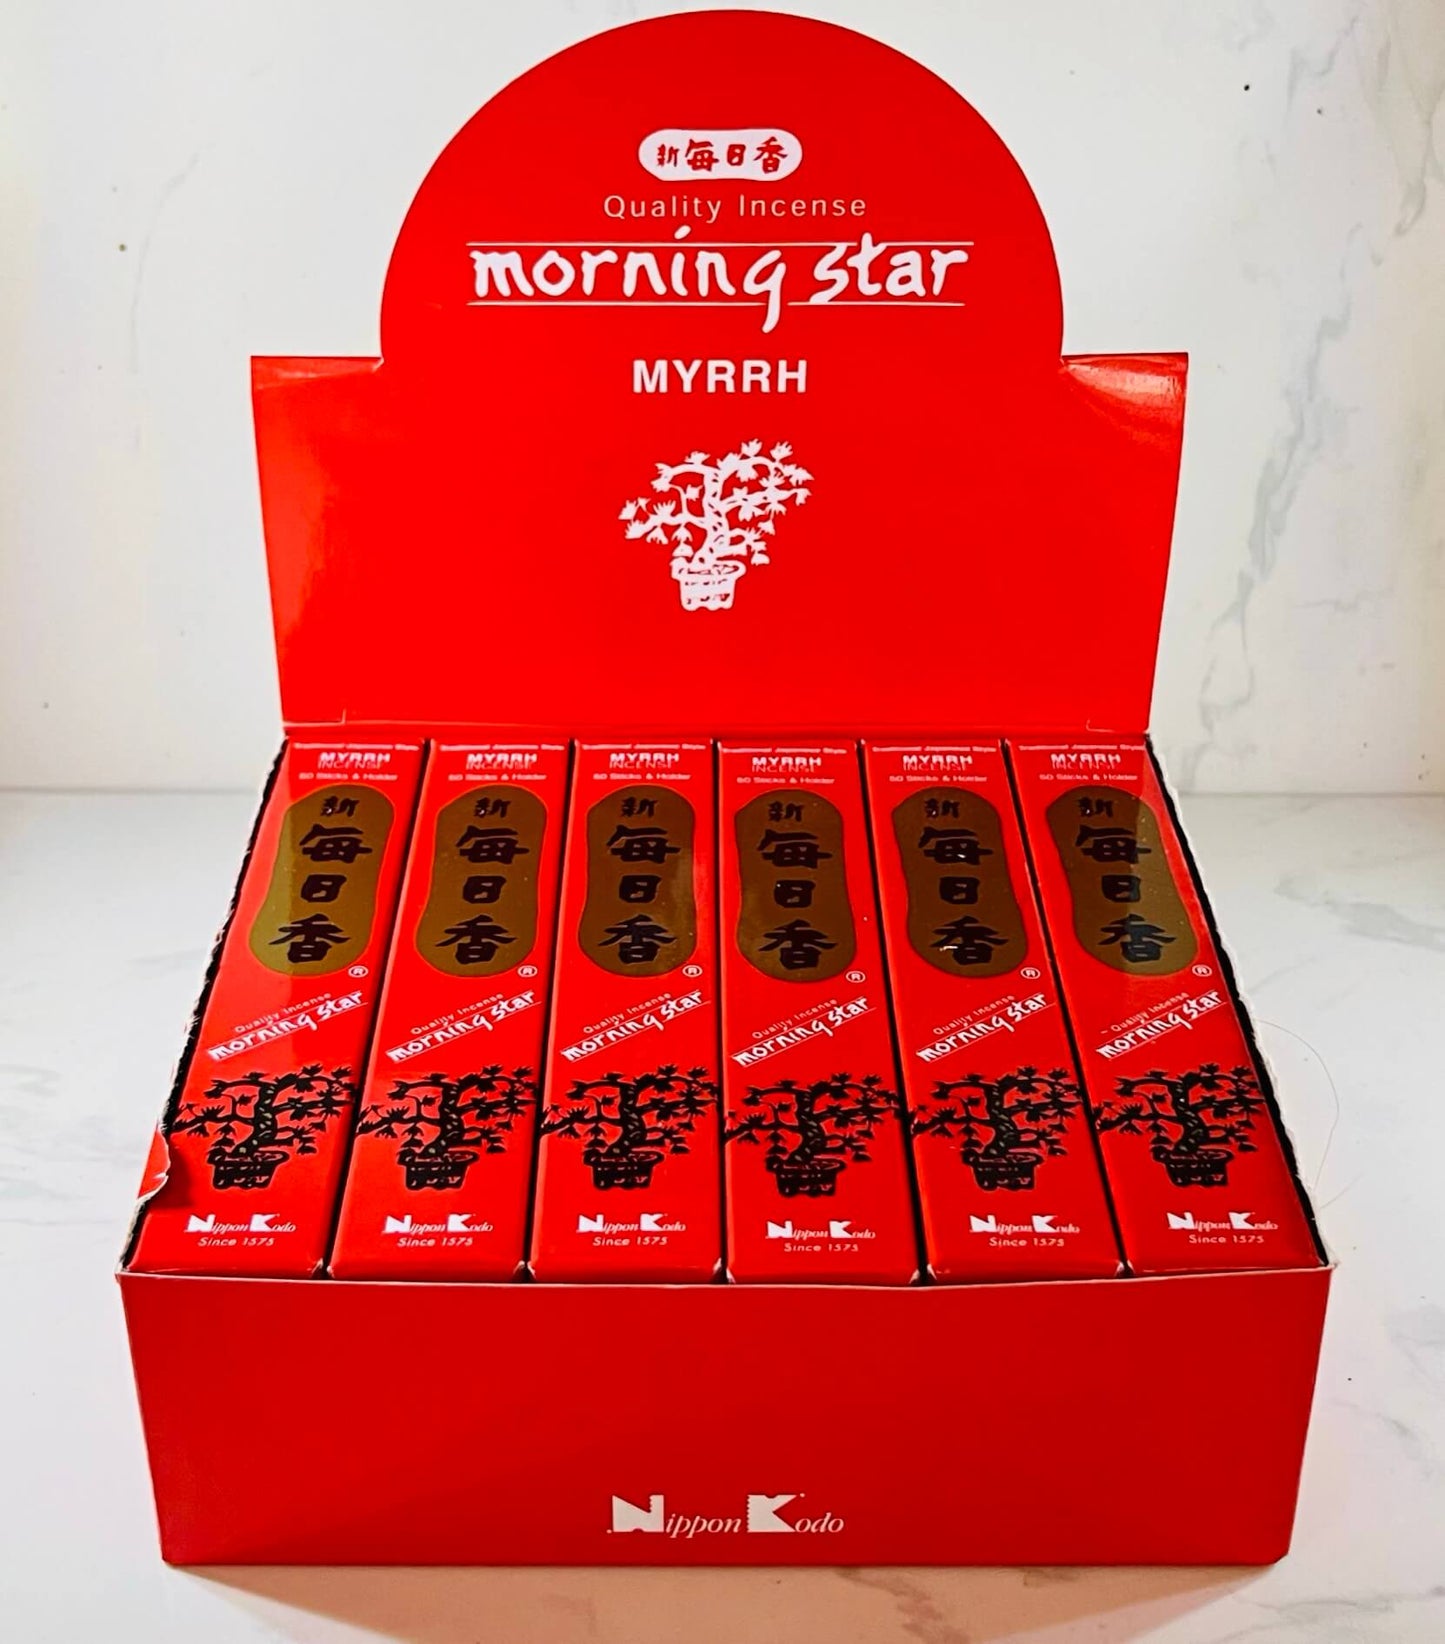 Morning Star MYRRH Japanese Incense